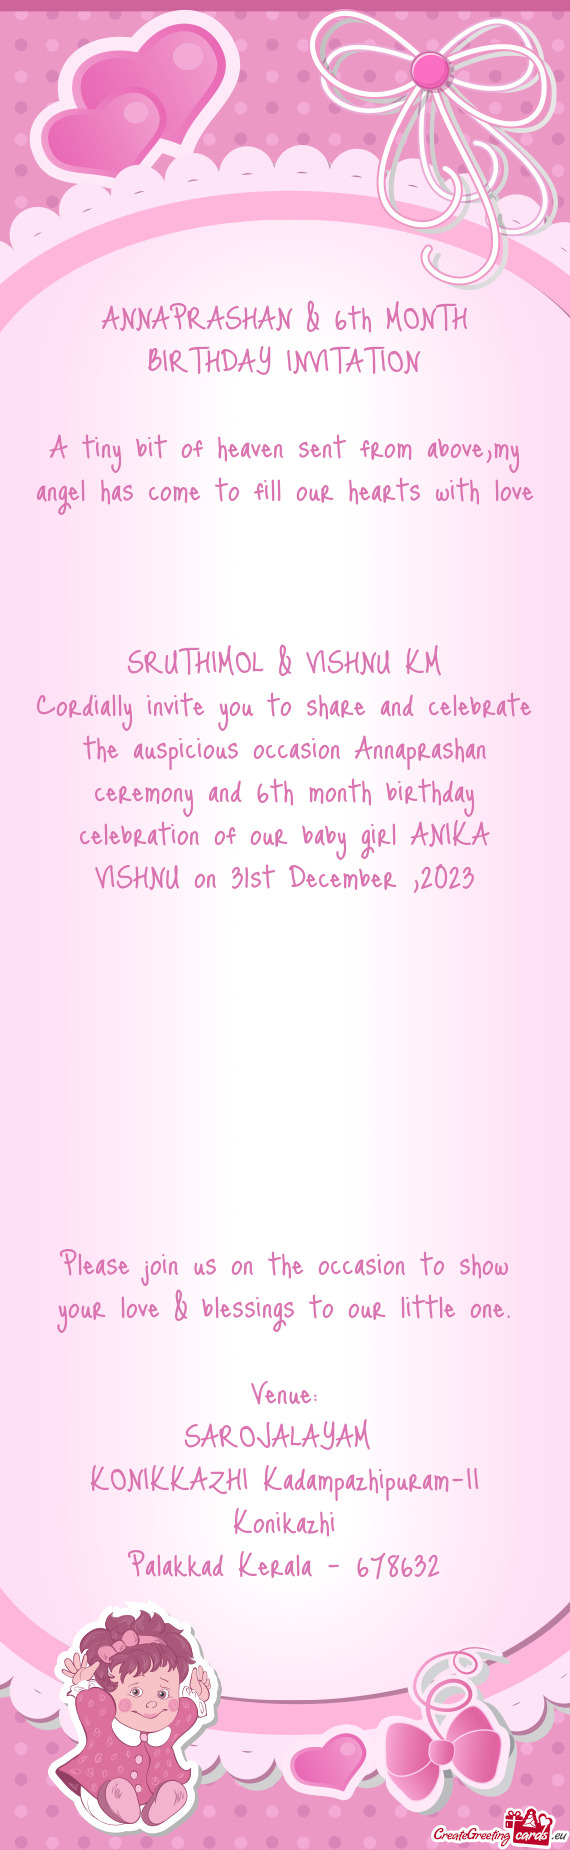 Th birthday celebration of our baby girl ANIKA VISHNU on 31st December ,2023